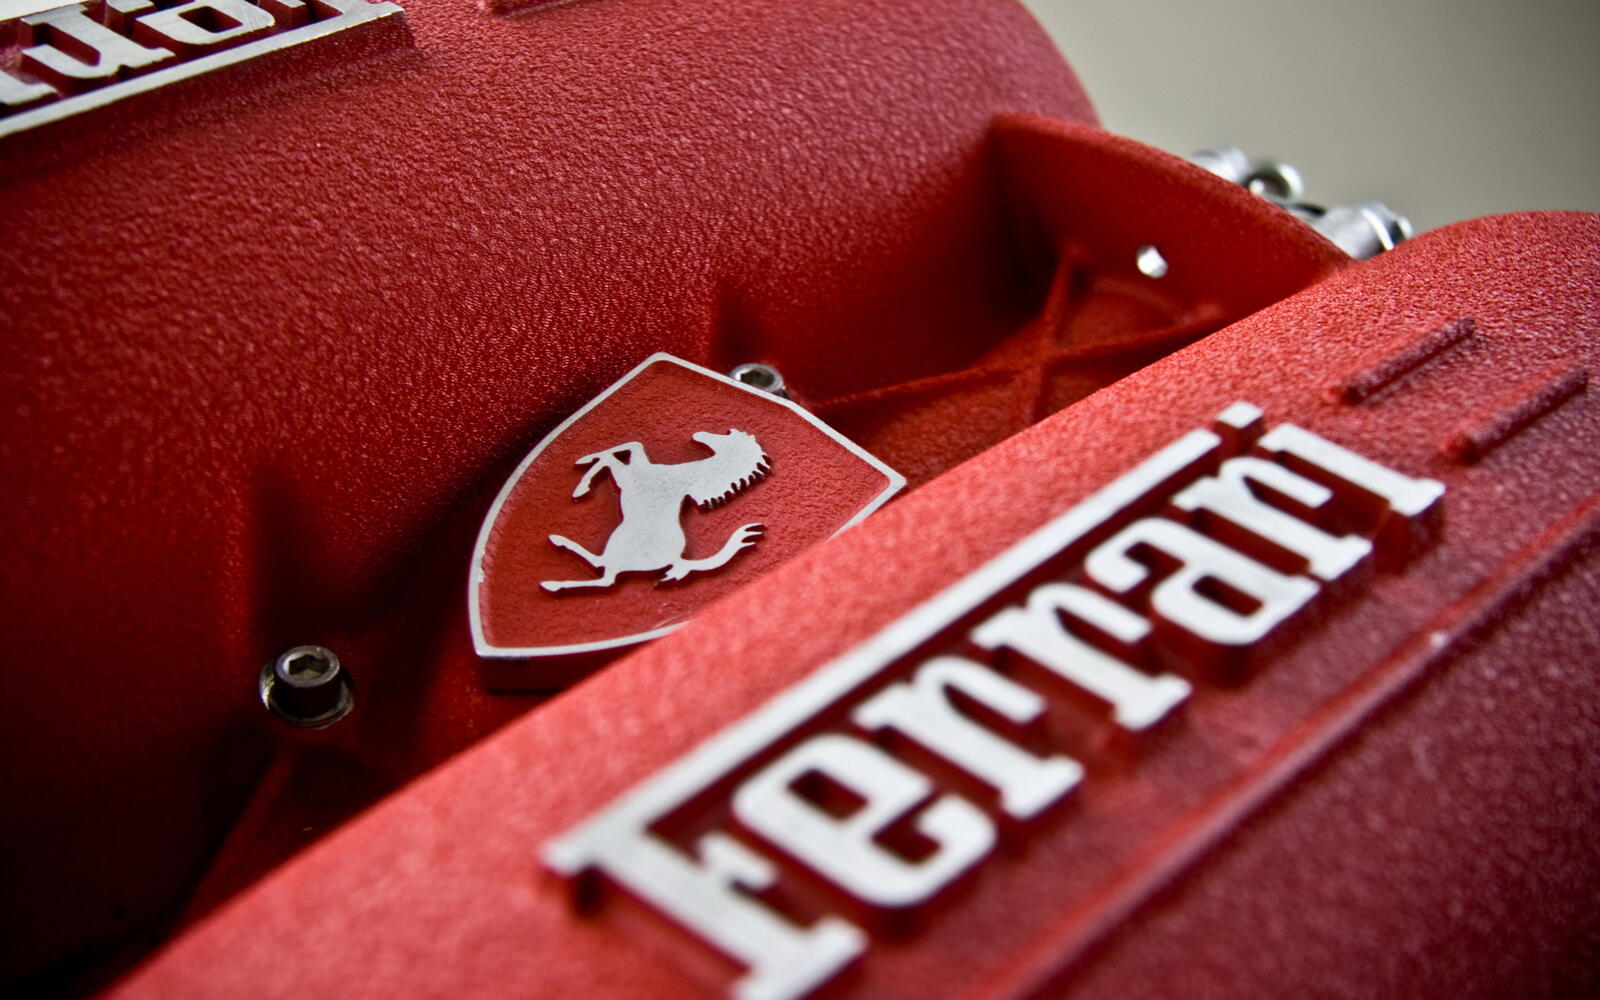 Wallpapers Ferrari engine logo on the desktop